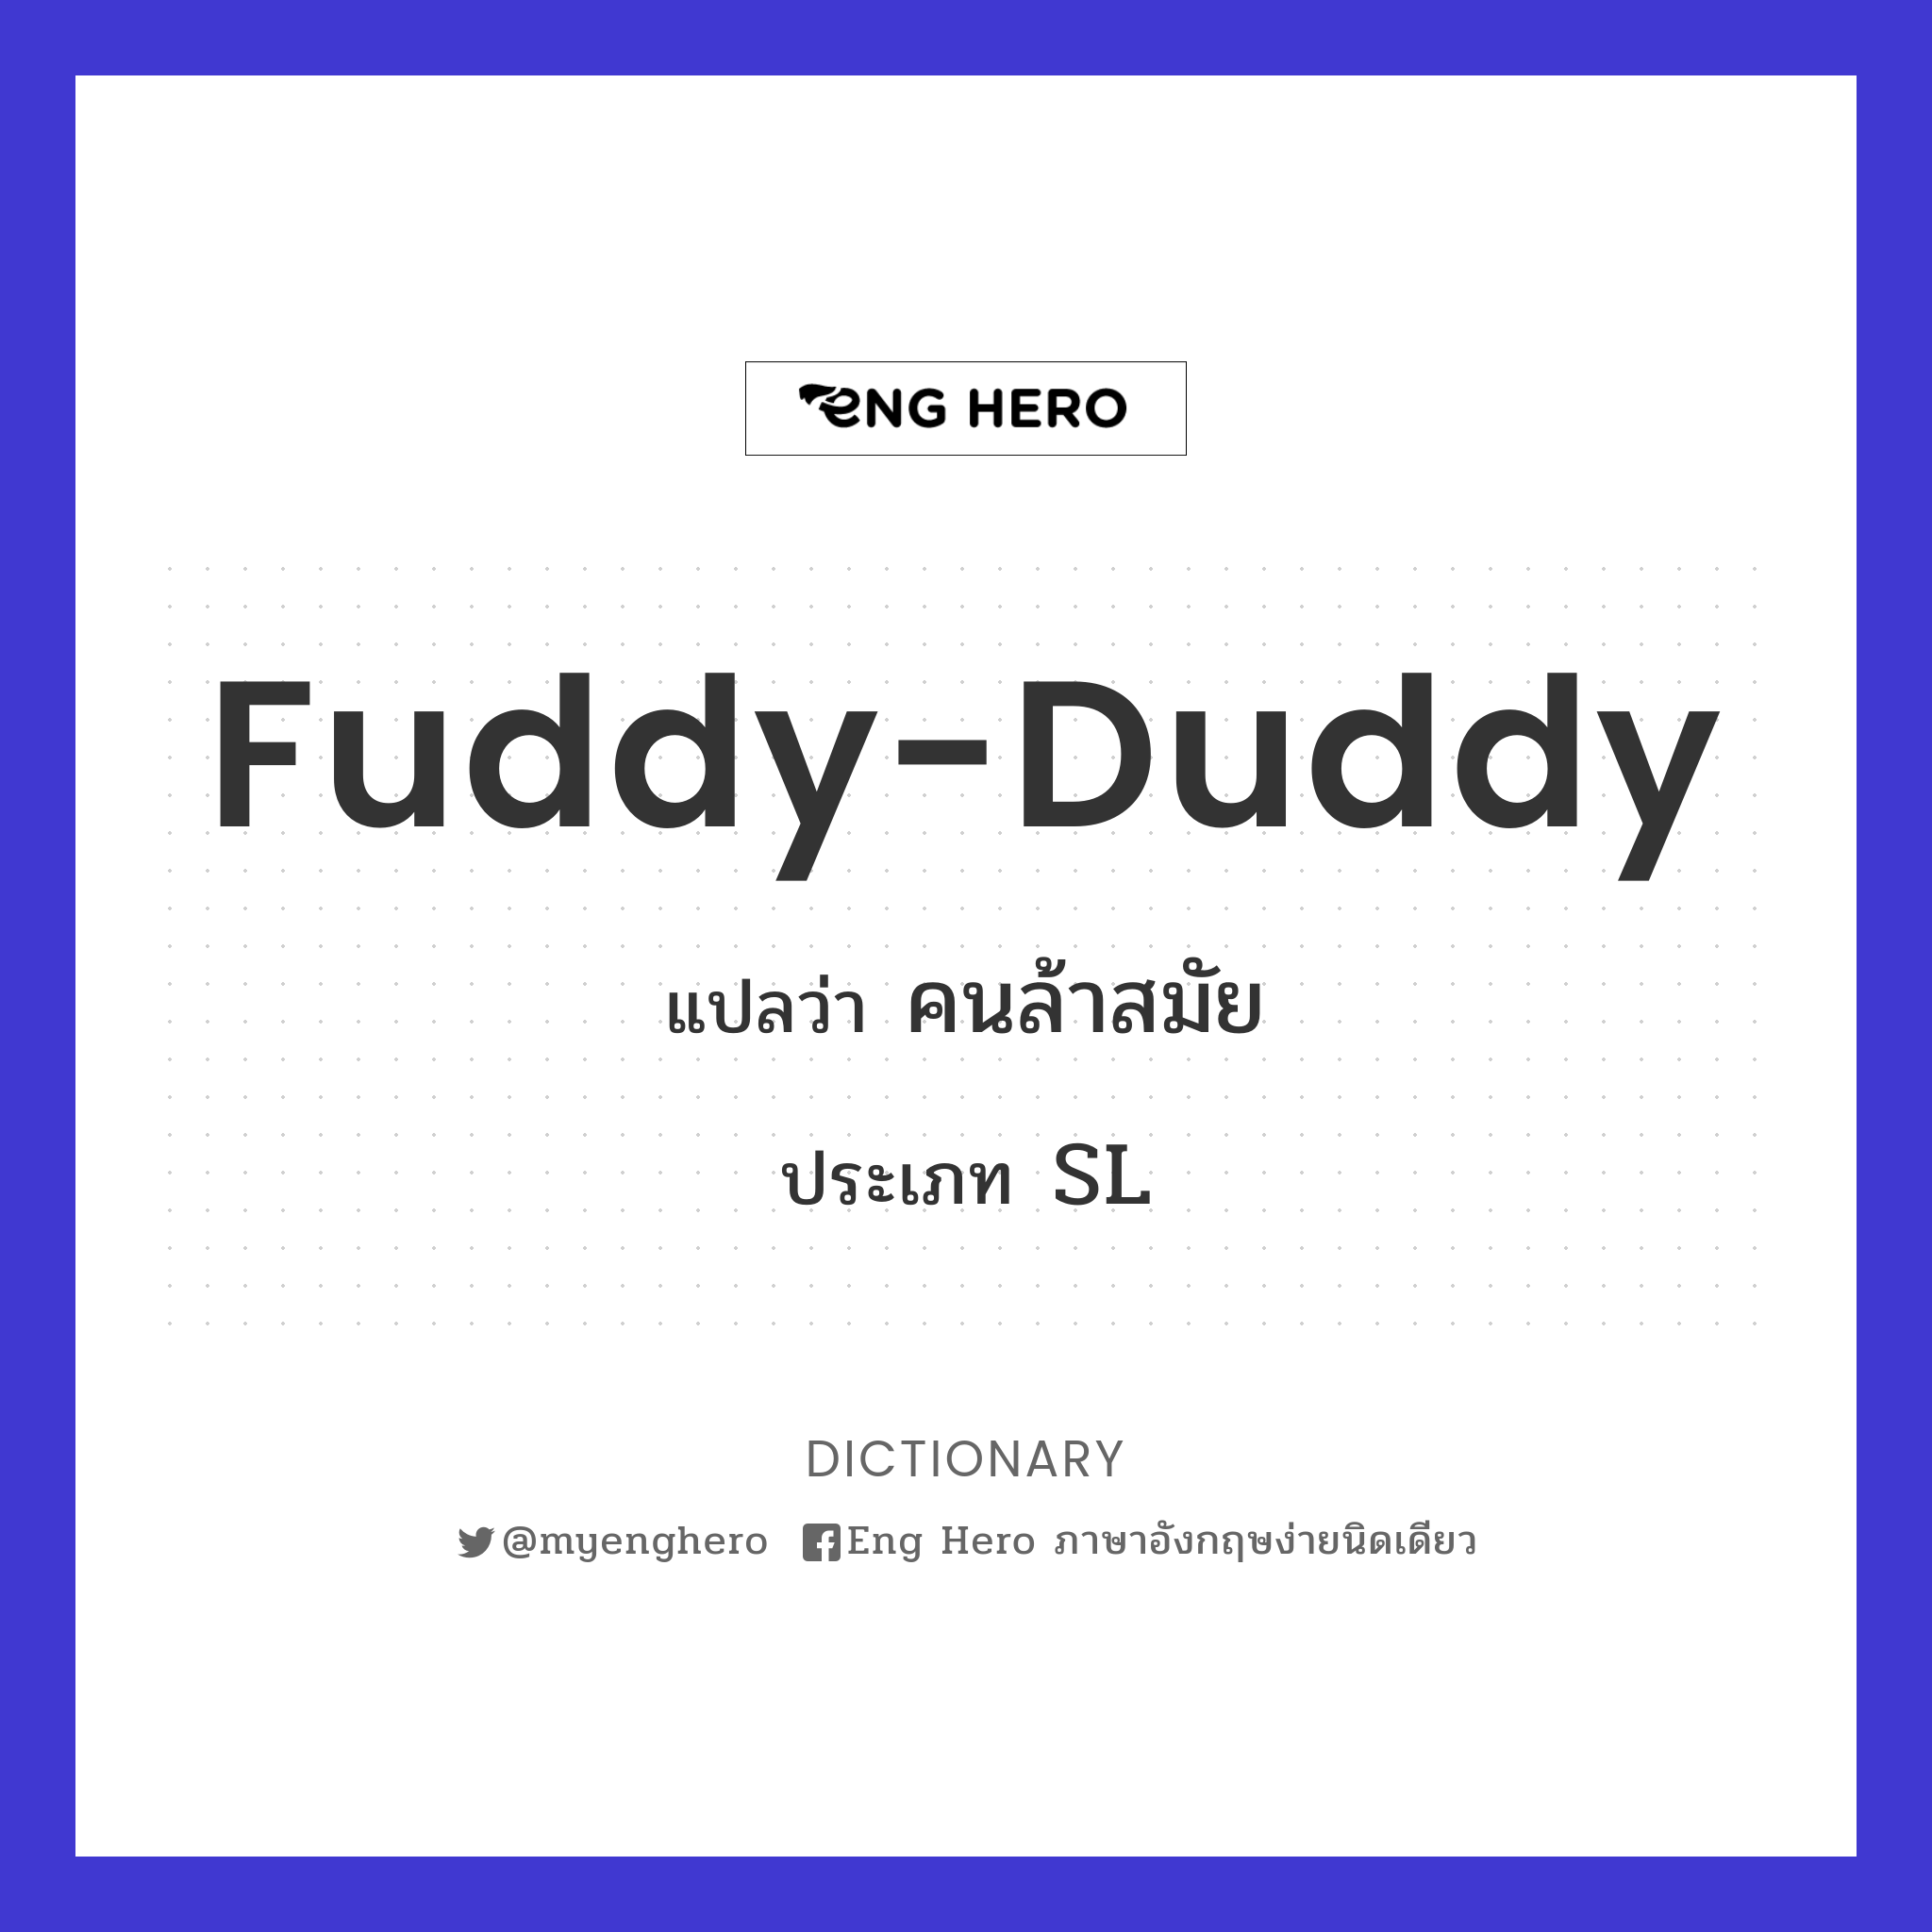 fuddy-duddy